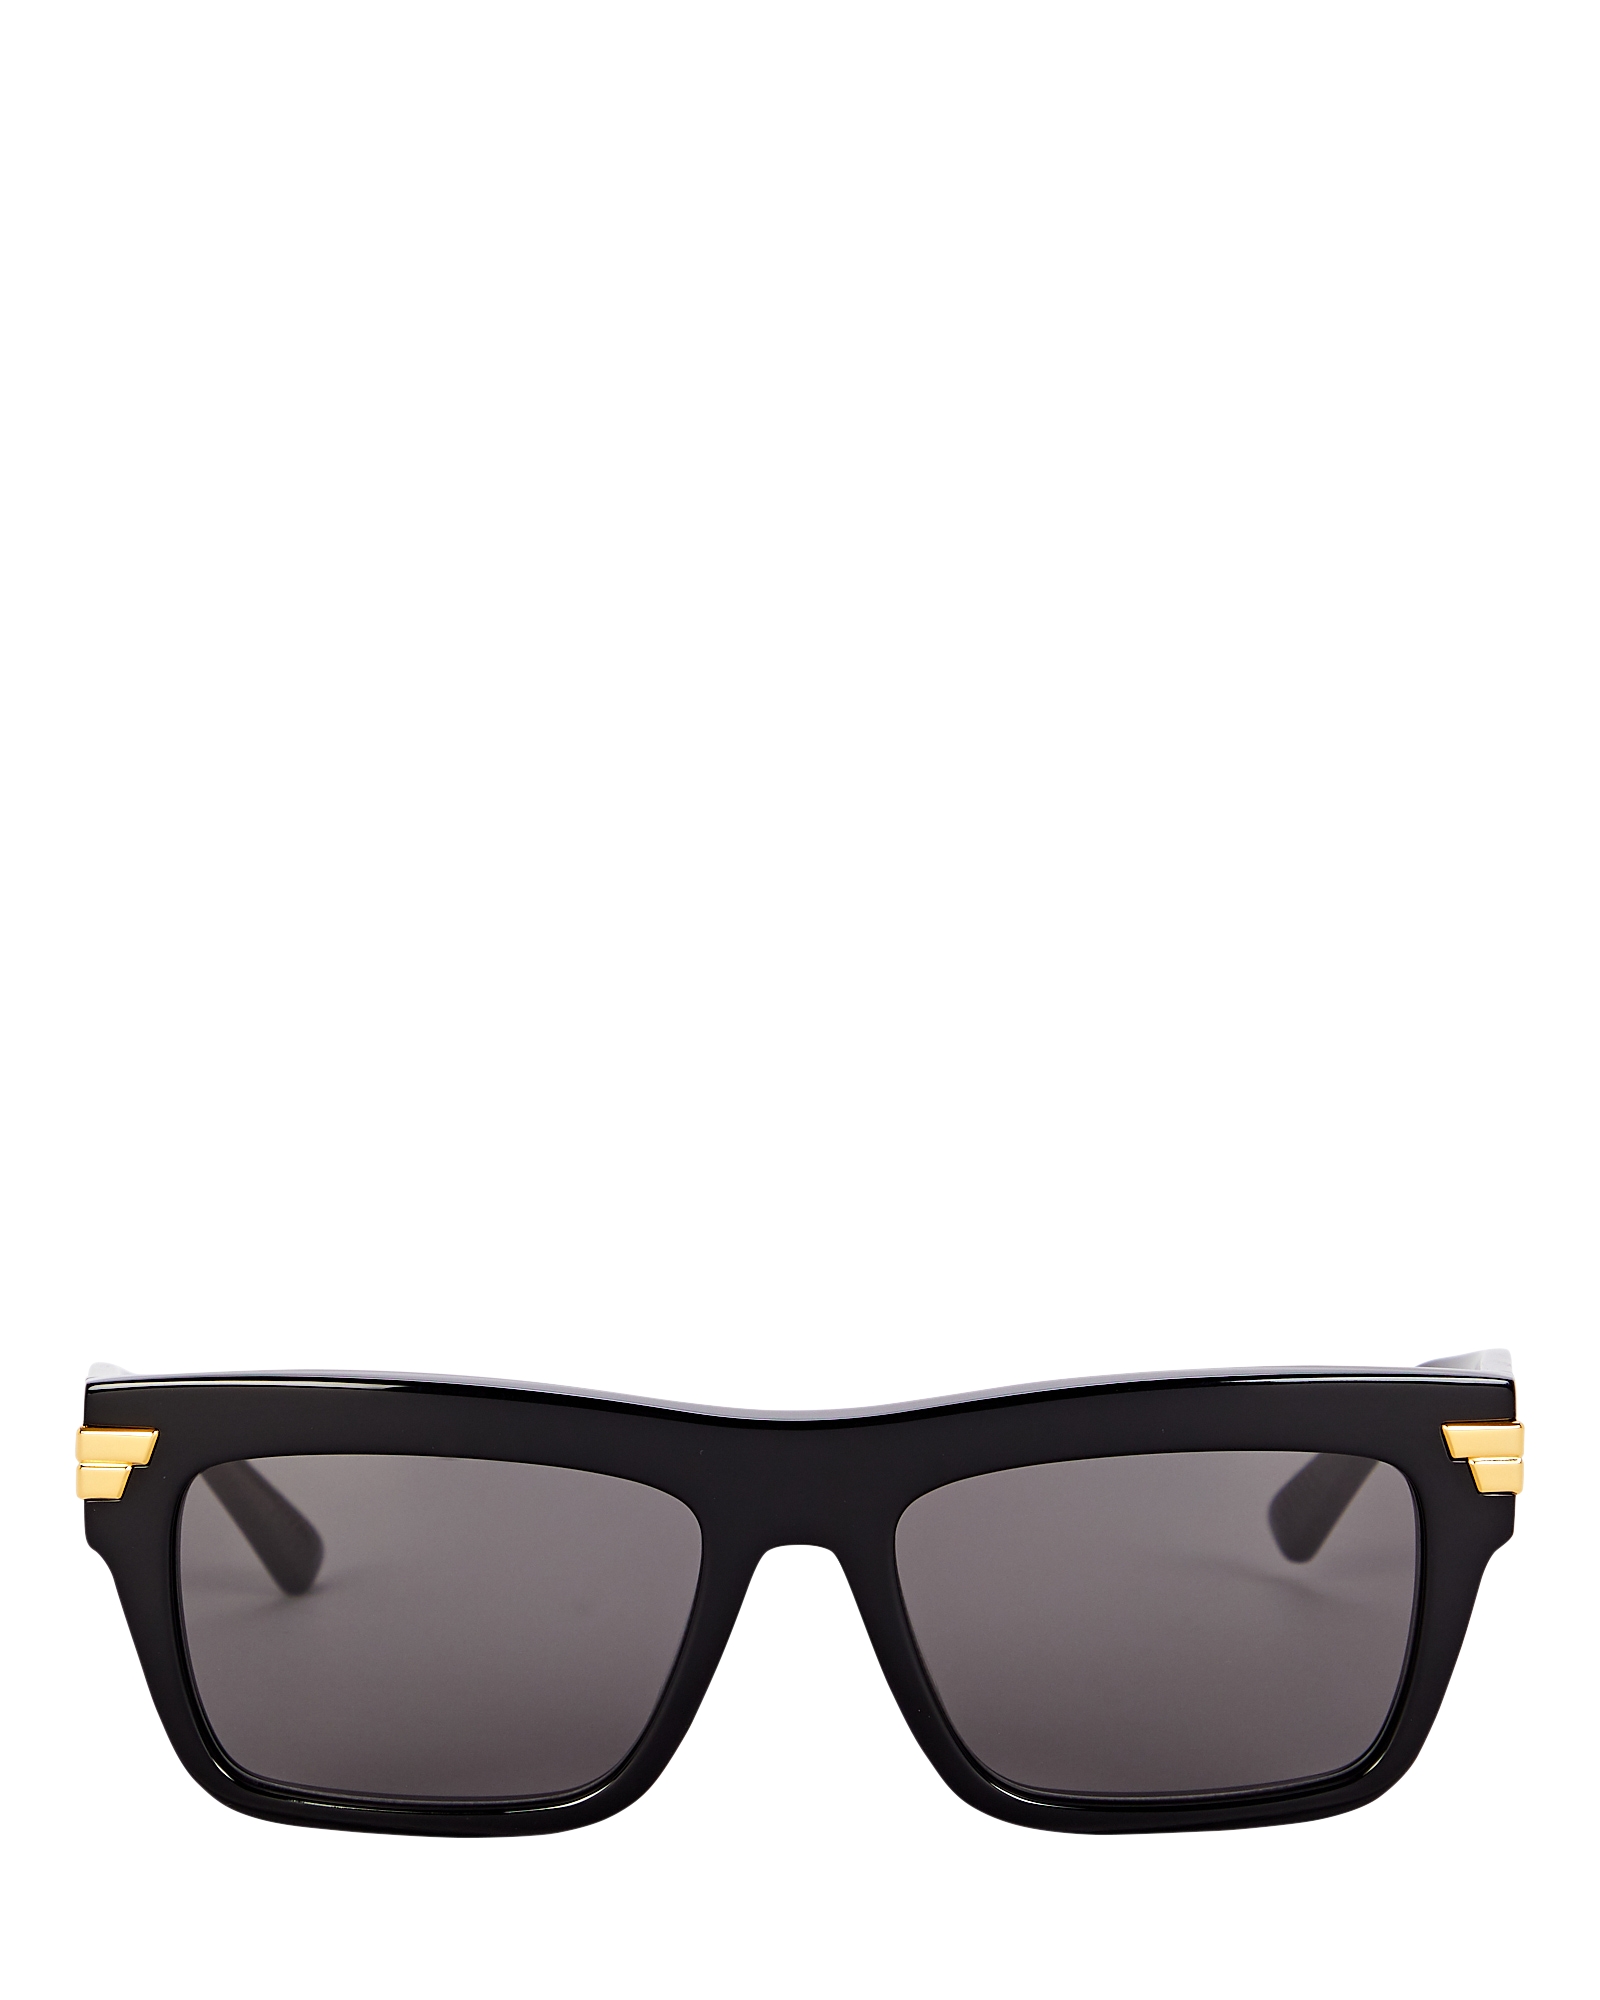 Bottega Veneta Oversized Rectangular Sunglasses | INTERMIX®